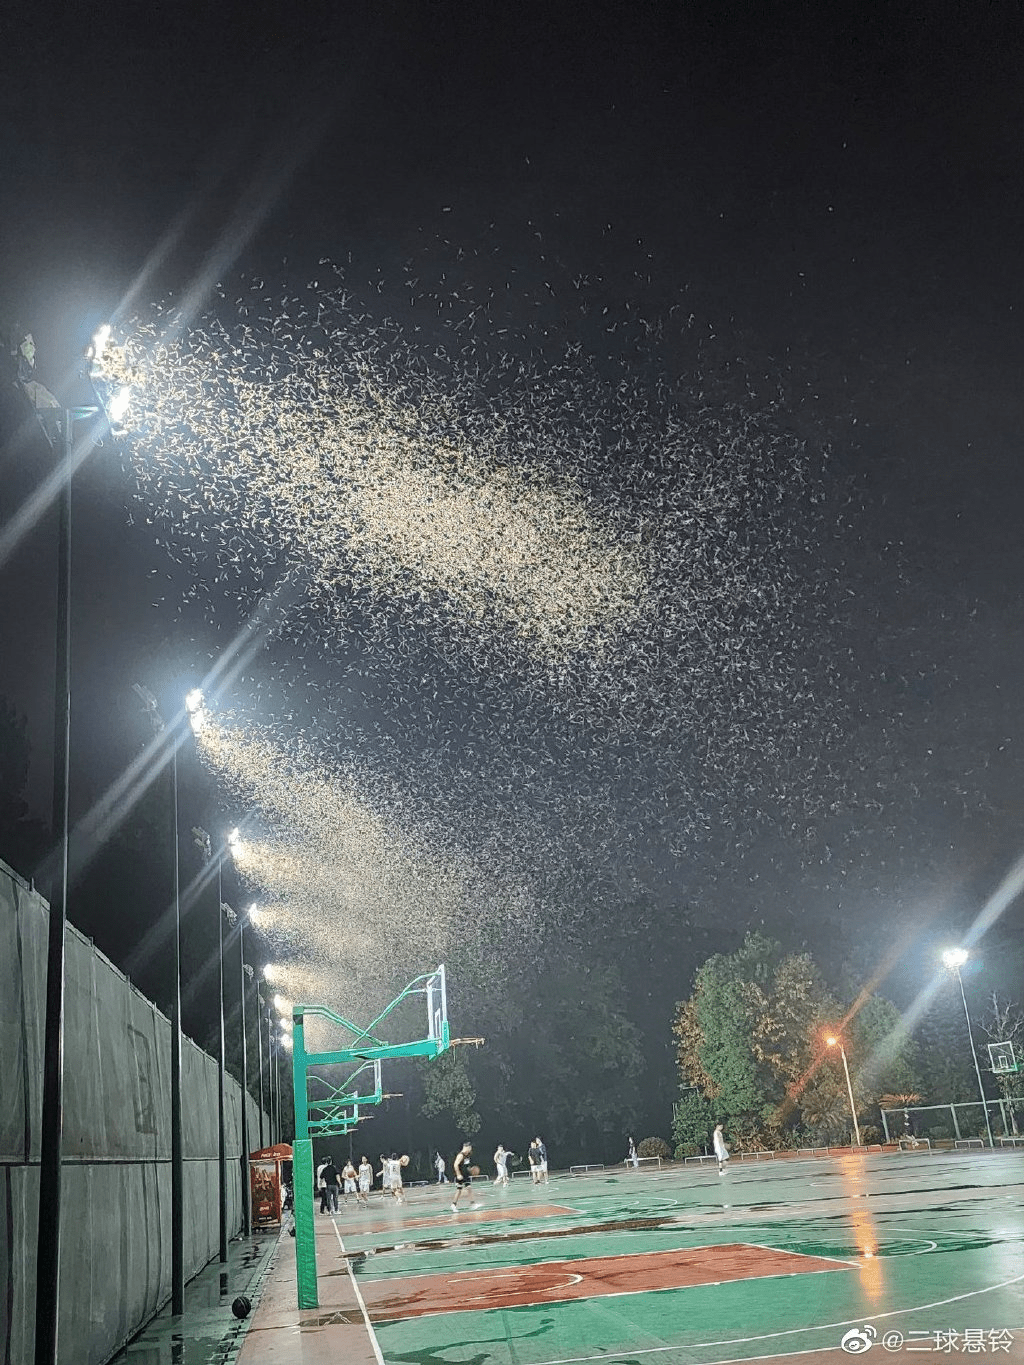 上海网民分享在户外的灯具下大量的白蚁在飞舞。